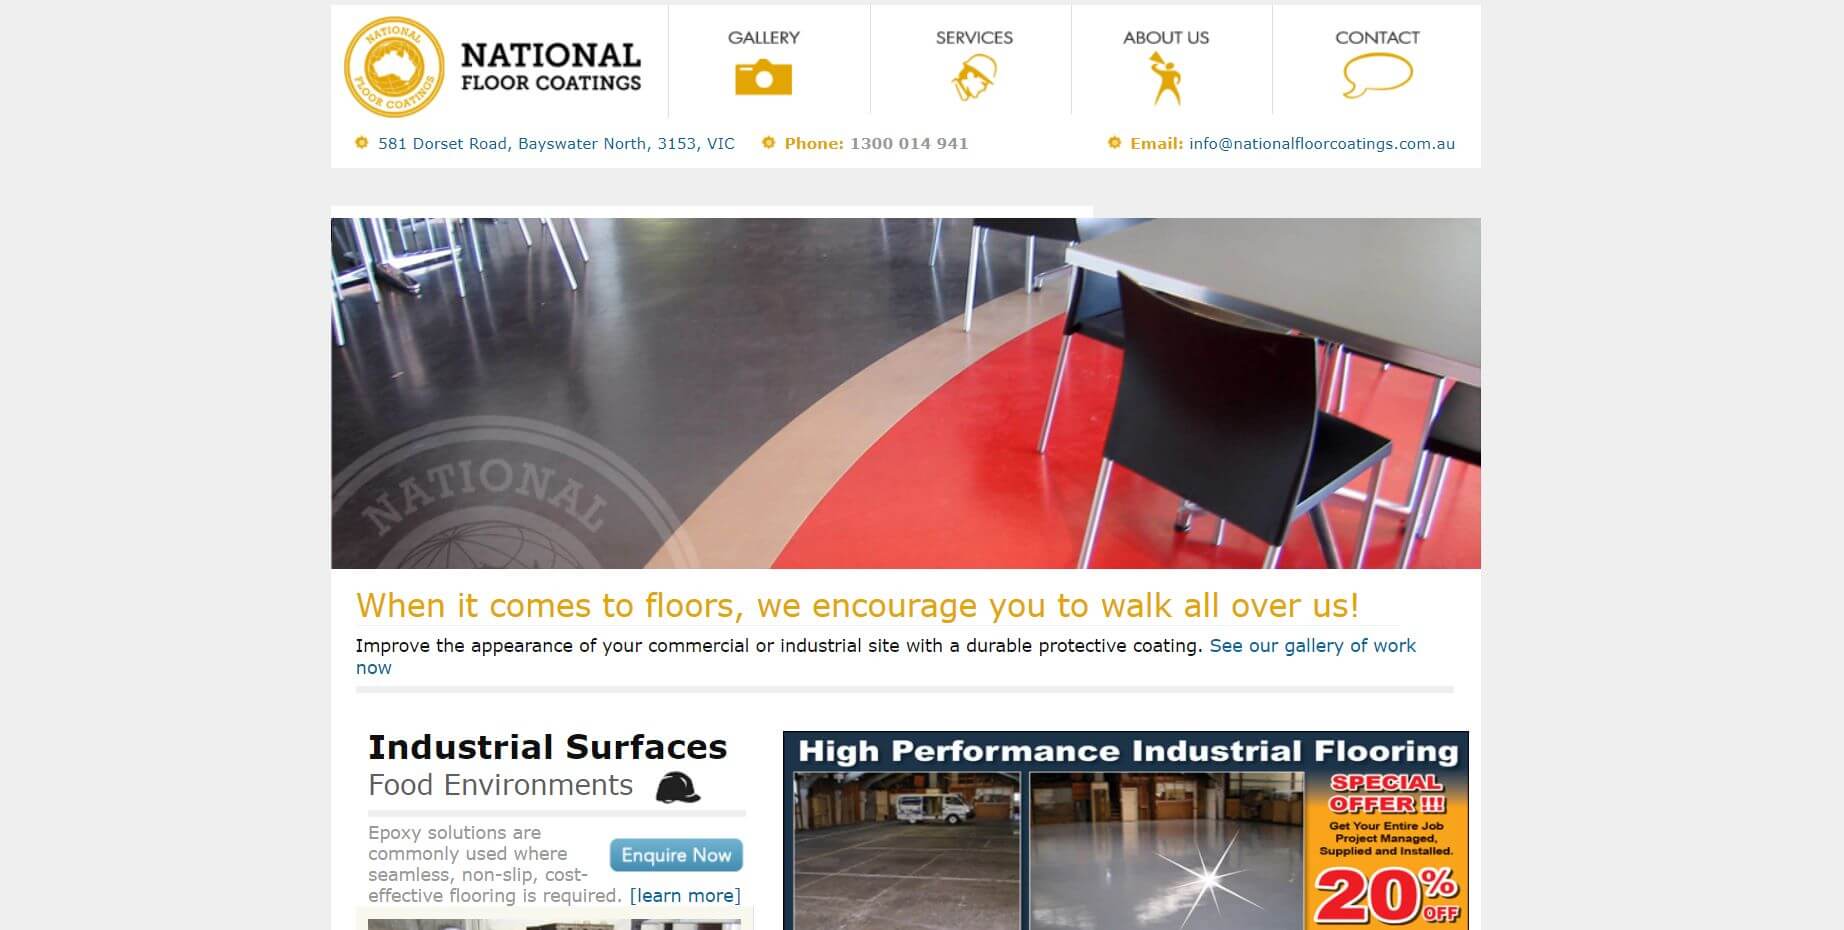 National Floor Coatings